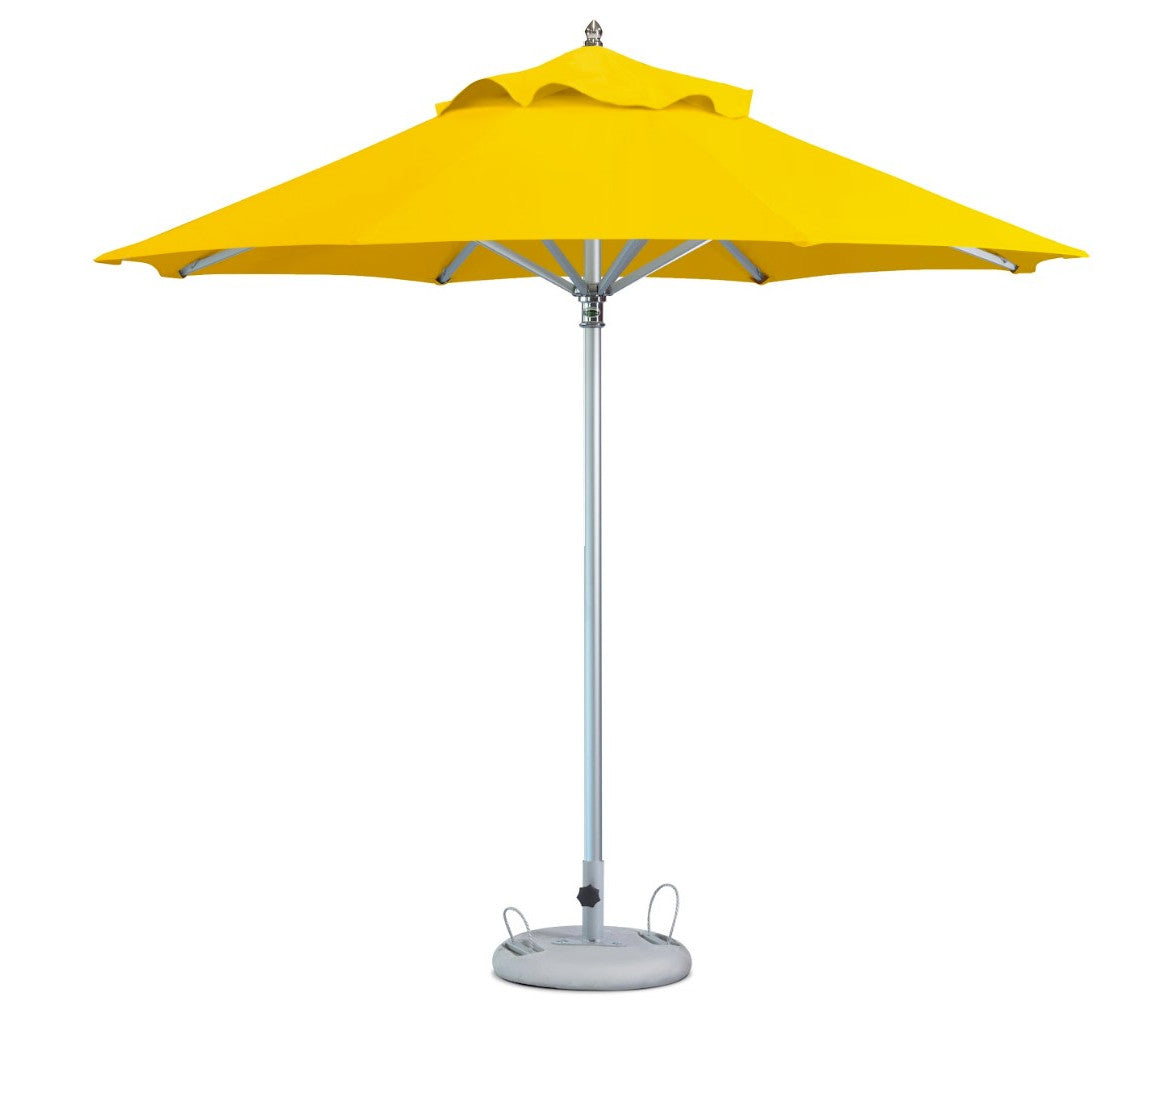 10' Yellow Polyester Round Market Patio Umbrella